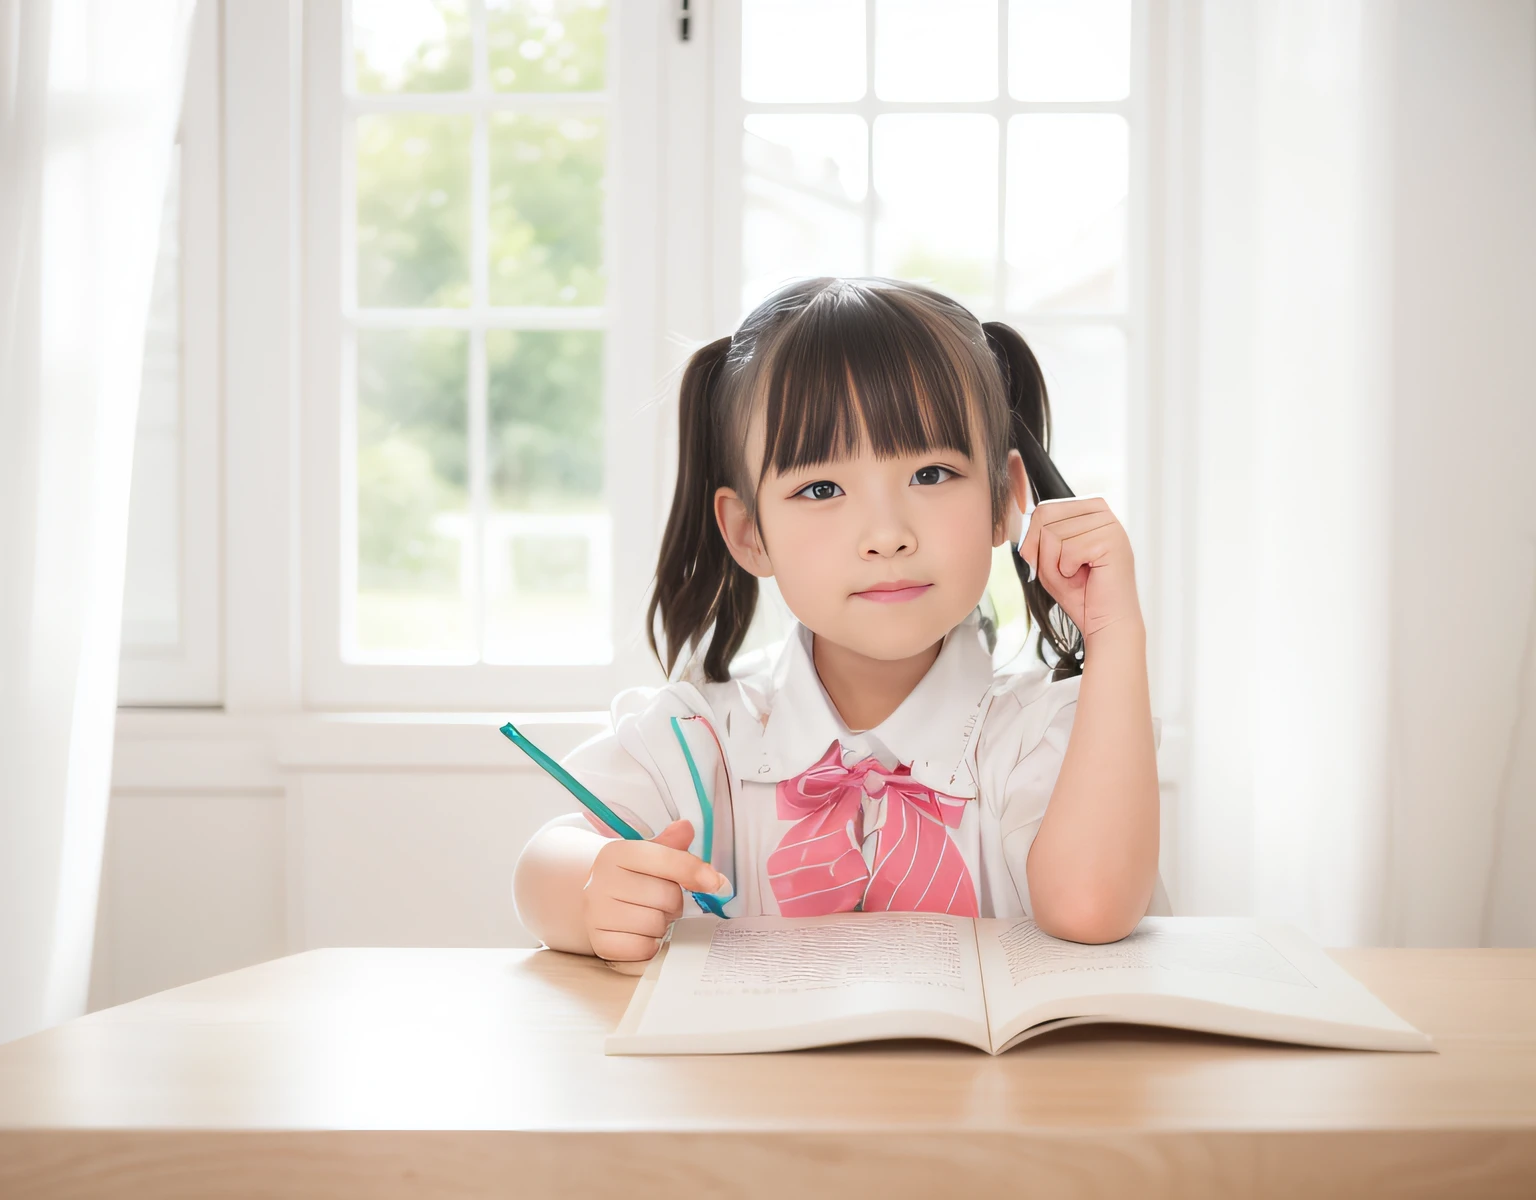 白色房间，白色窗户，有一个年轻女孩坐在桌边，拿一本书和一支铅笔, 两根小辫子的发型, 扎着黑色辫子, 儿童绘画, 辫子发型，自然手指。拿着笔，